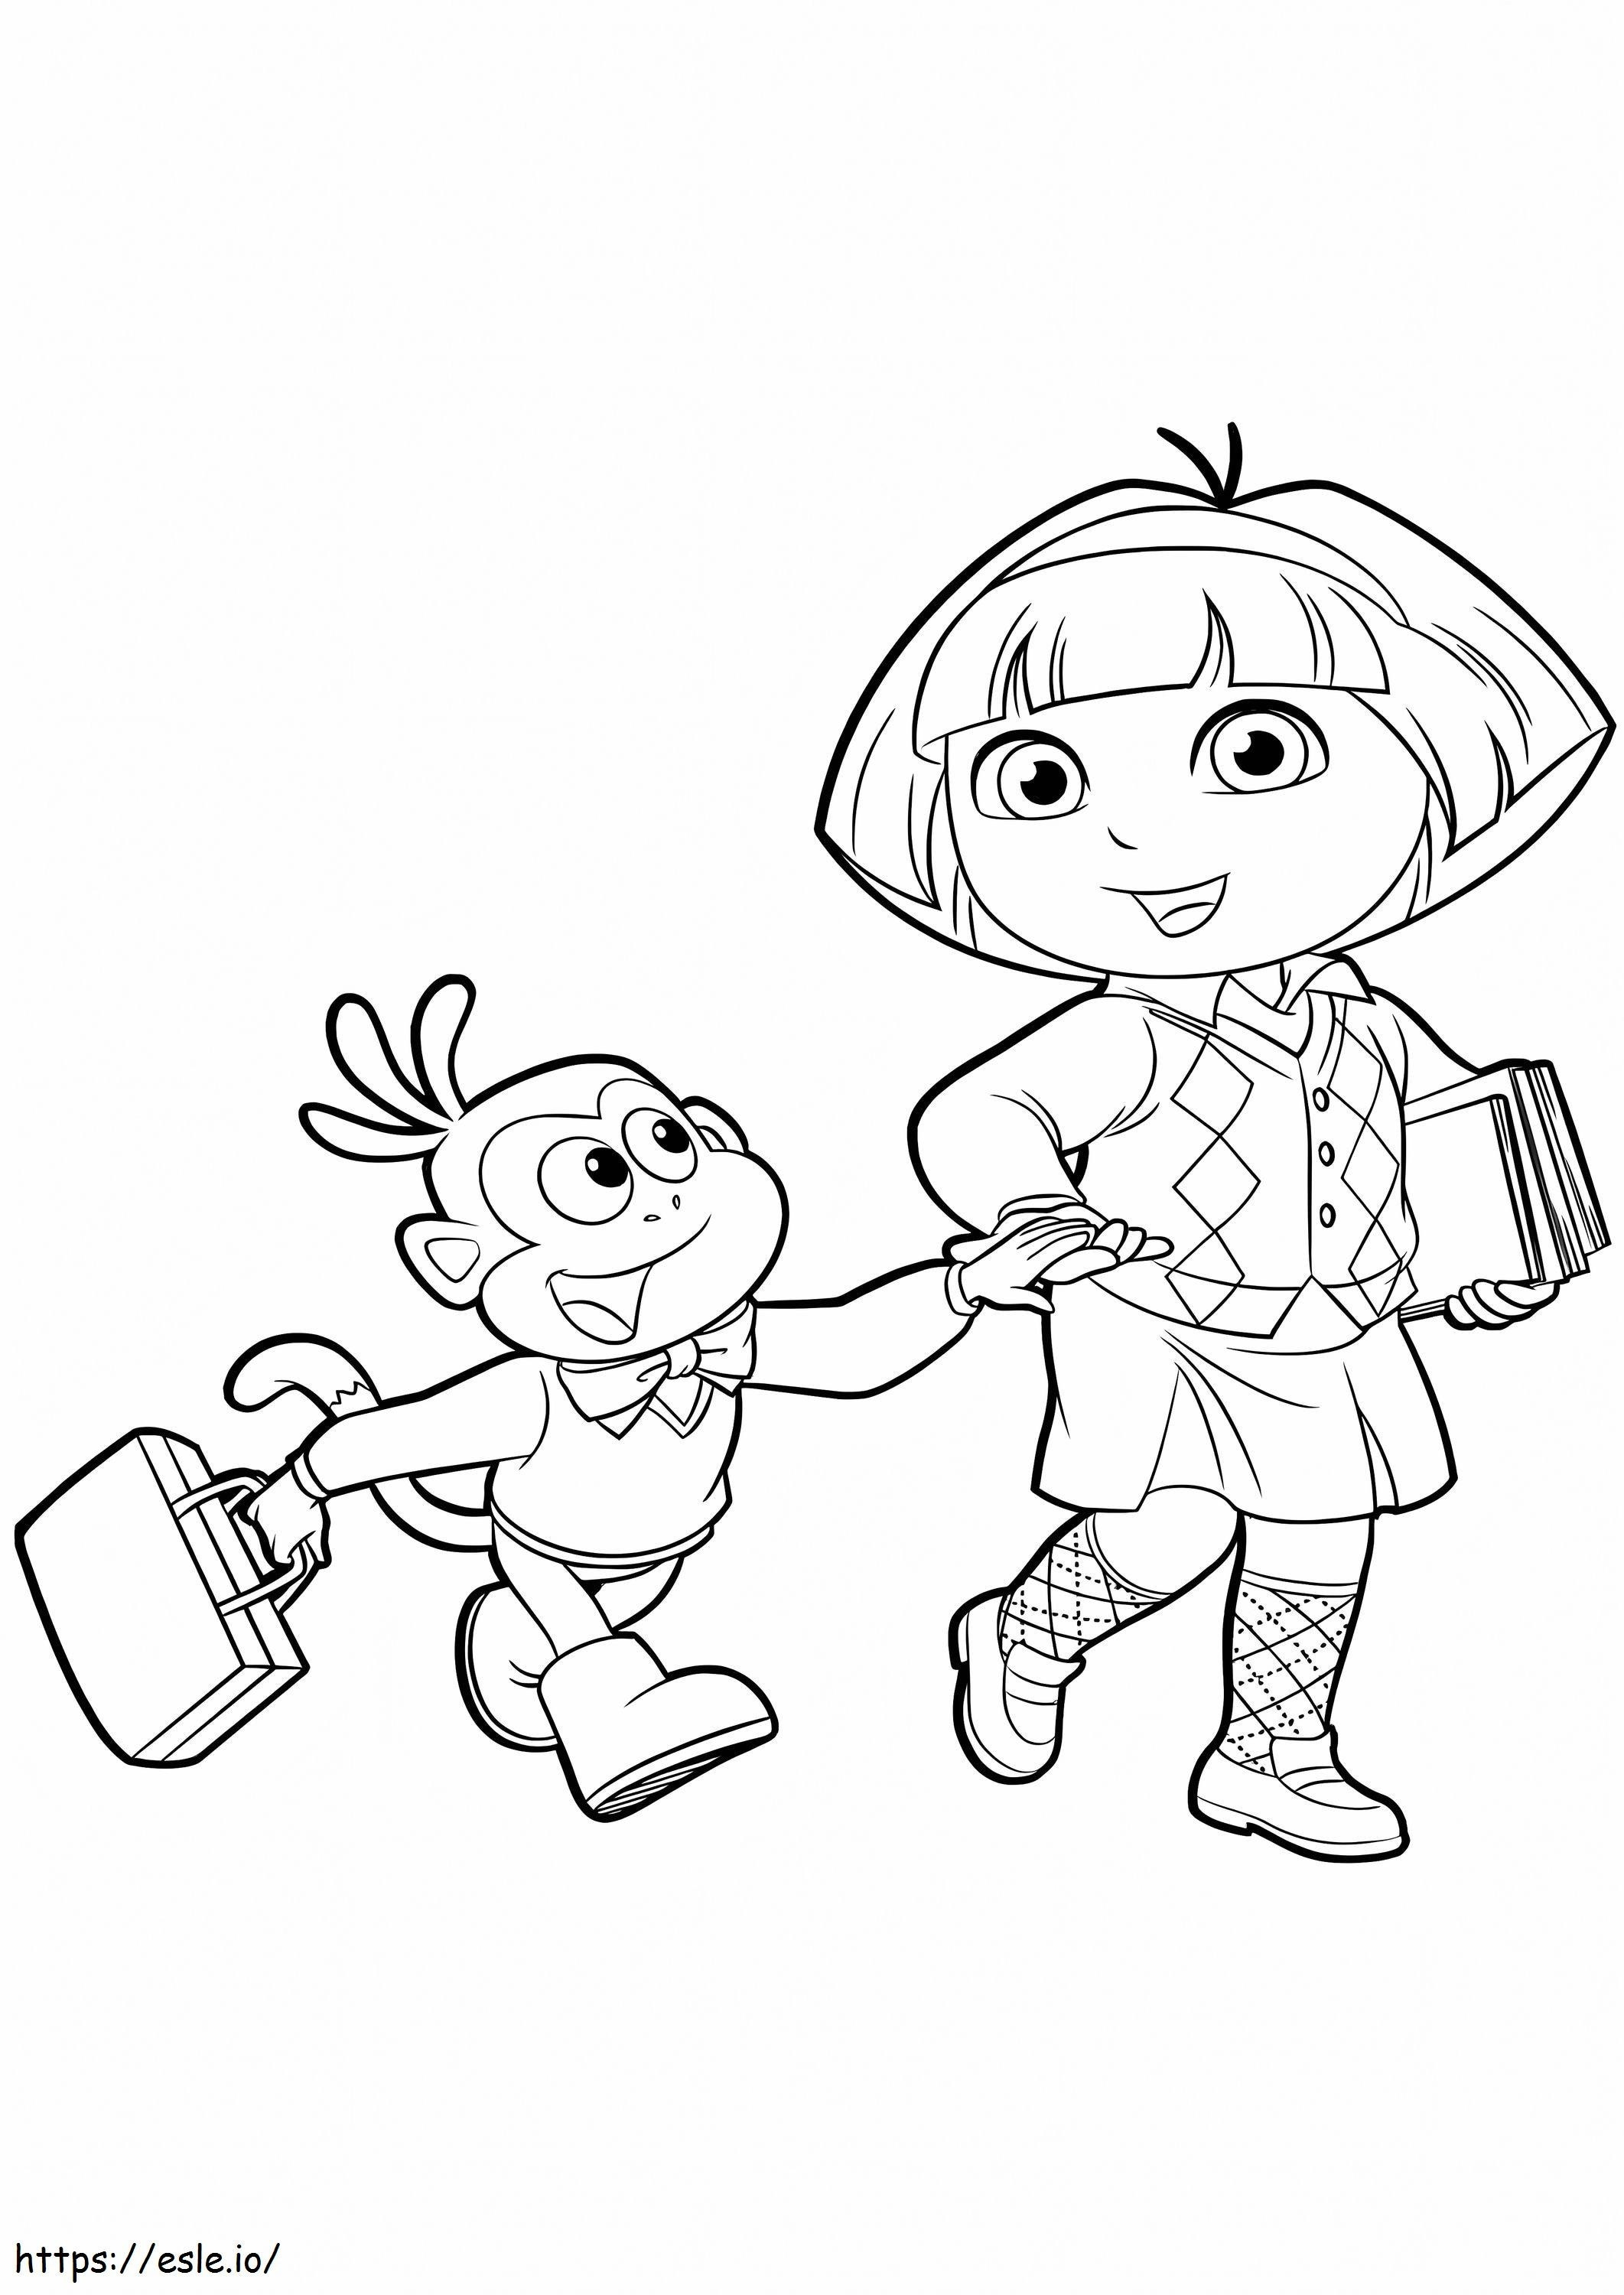 Dora e Boots vanno a scuola da colorare